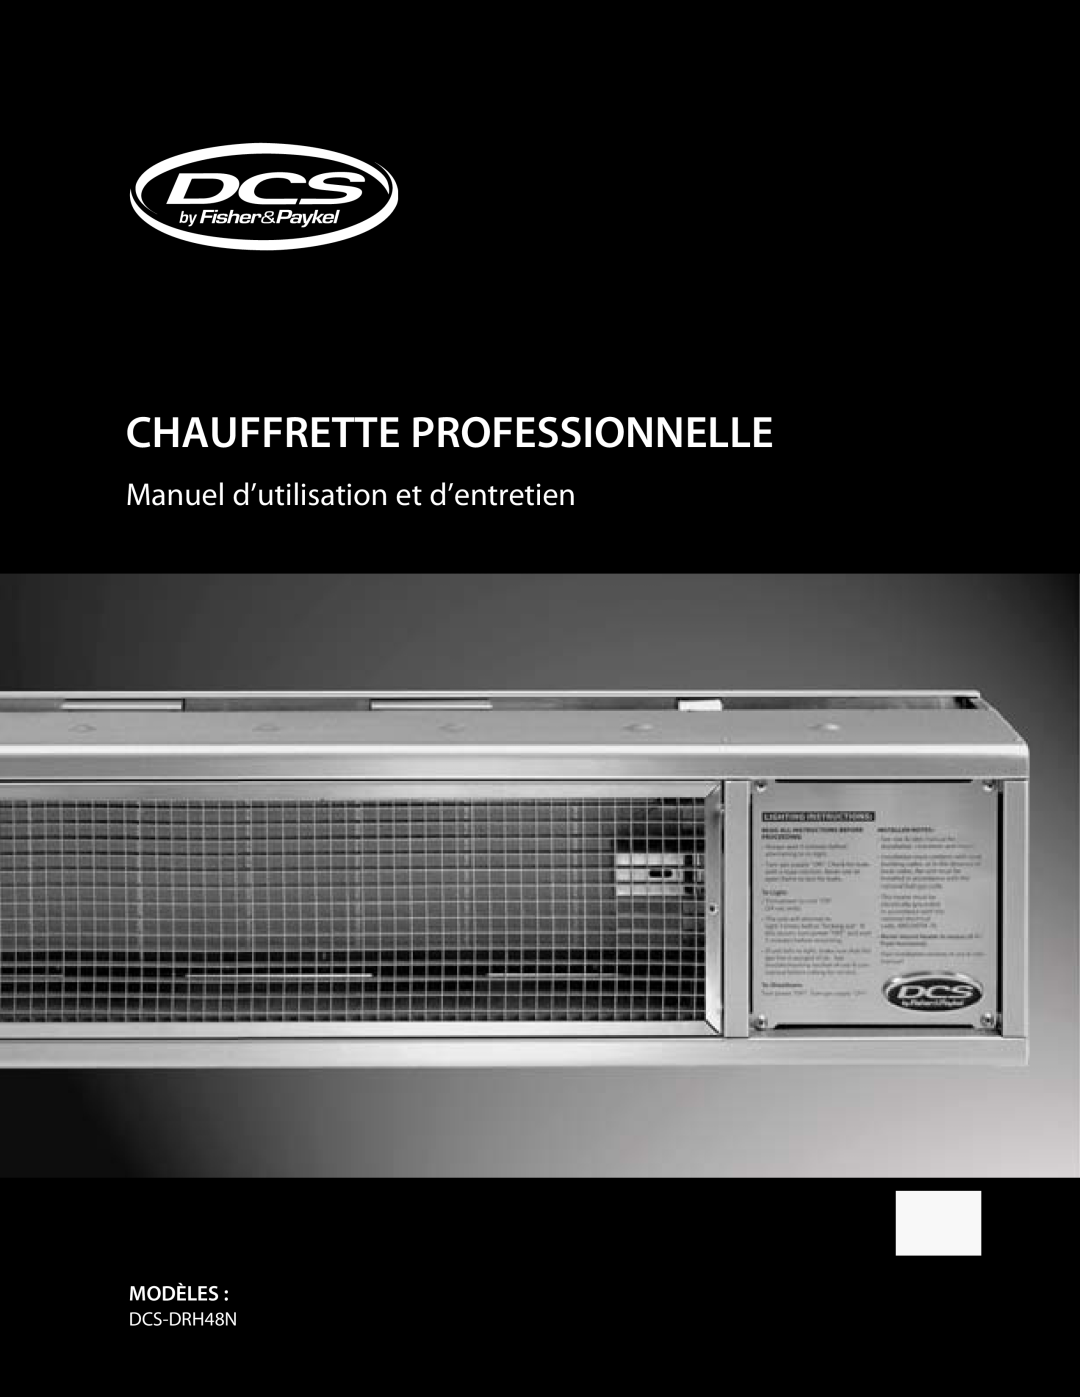 Fisher & Paykel DRH-48N manual Chauffrette Professionnelle, Manuel d’utilisation et d’entretien, Modèles, DCS-DRH48N 